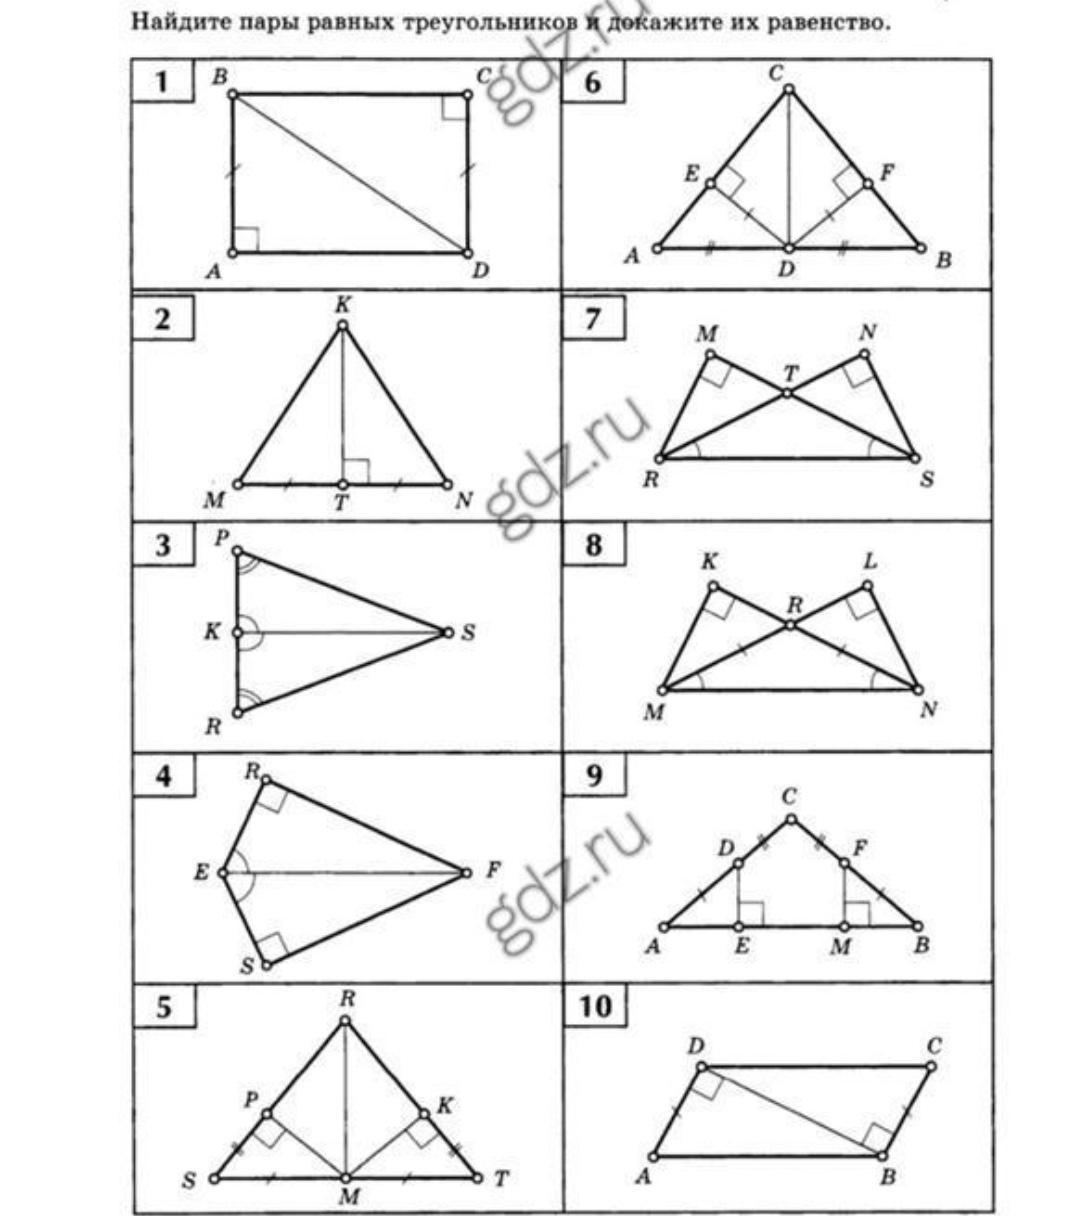 Решение задач на равенство прямоугольных треугольников. Задачи на признаки равенства прямоугольных треугольников 7 класс. Задания по признакам равенства прямоугольных треугольников 7 класс. Равенство прямоугольных треугольников задачи по готовым чертежам. Задания на признаки равенства прямоугольных треугольников 7 класс.